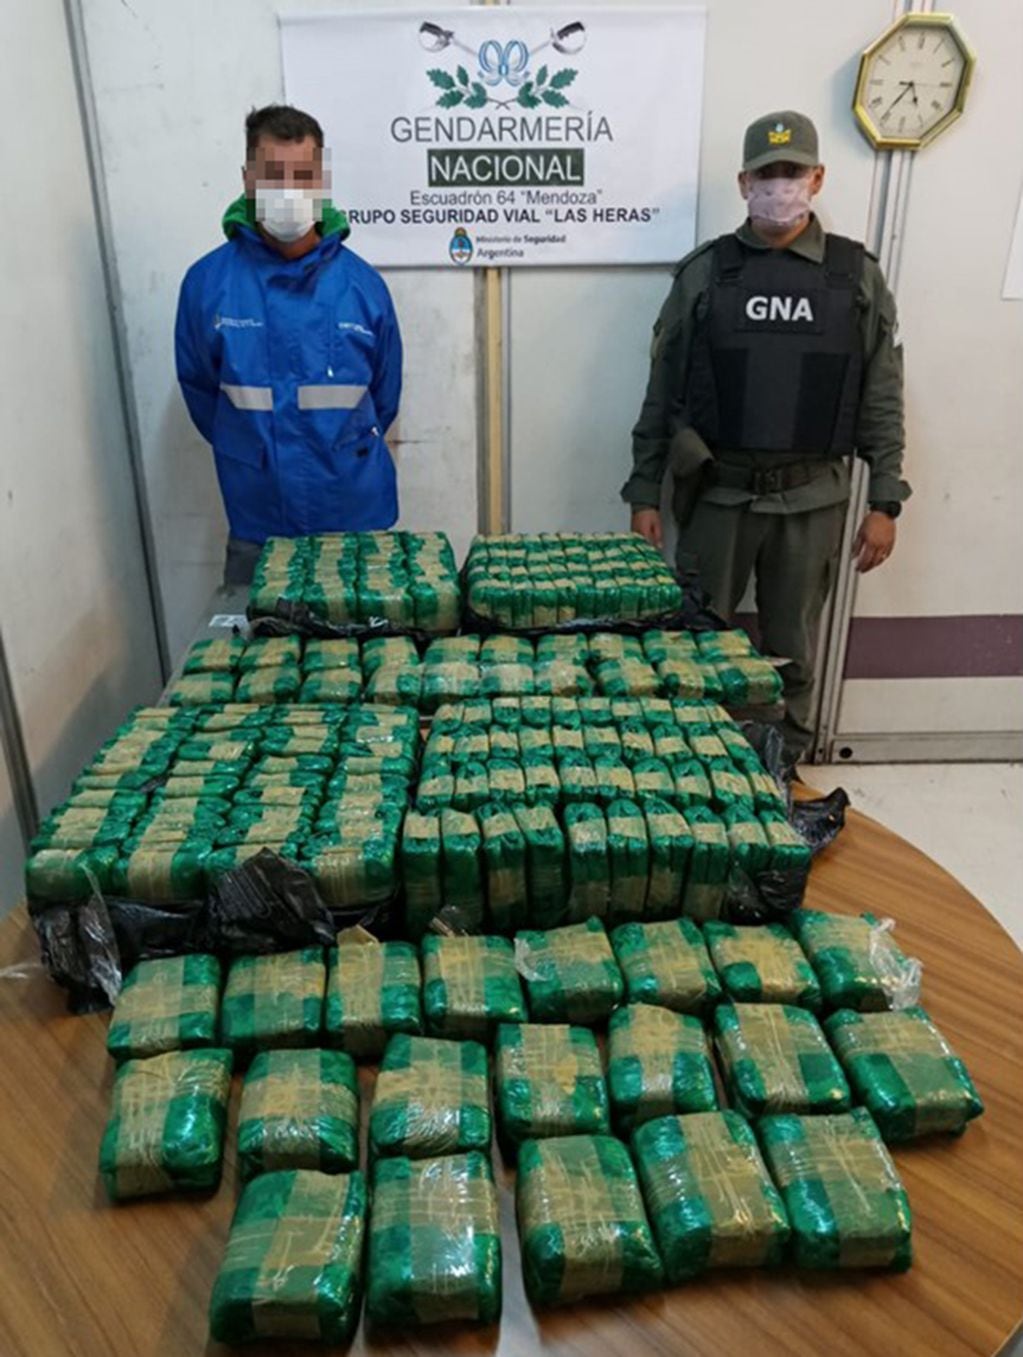 Gendarmería secuestró 200 paquetes con 50 kilos de hojas de coca en la terminal de Ómnibus. Foto: Gendarmería Nacional.